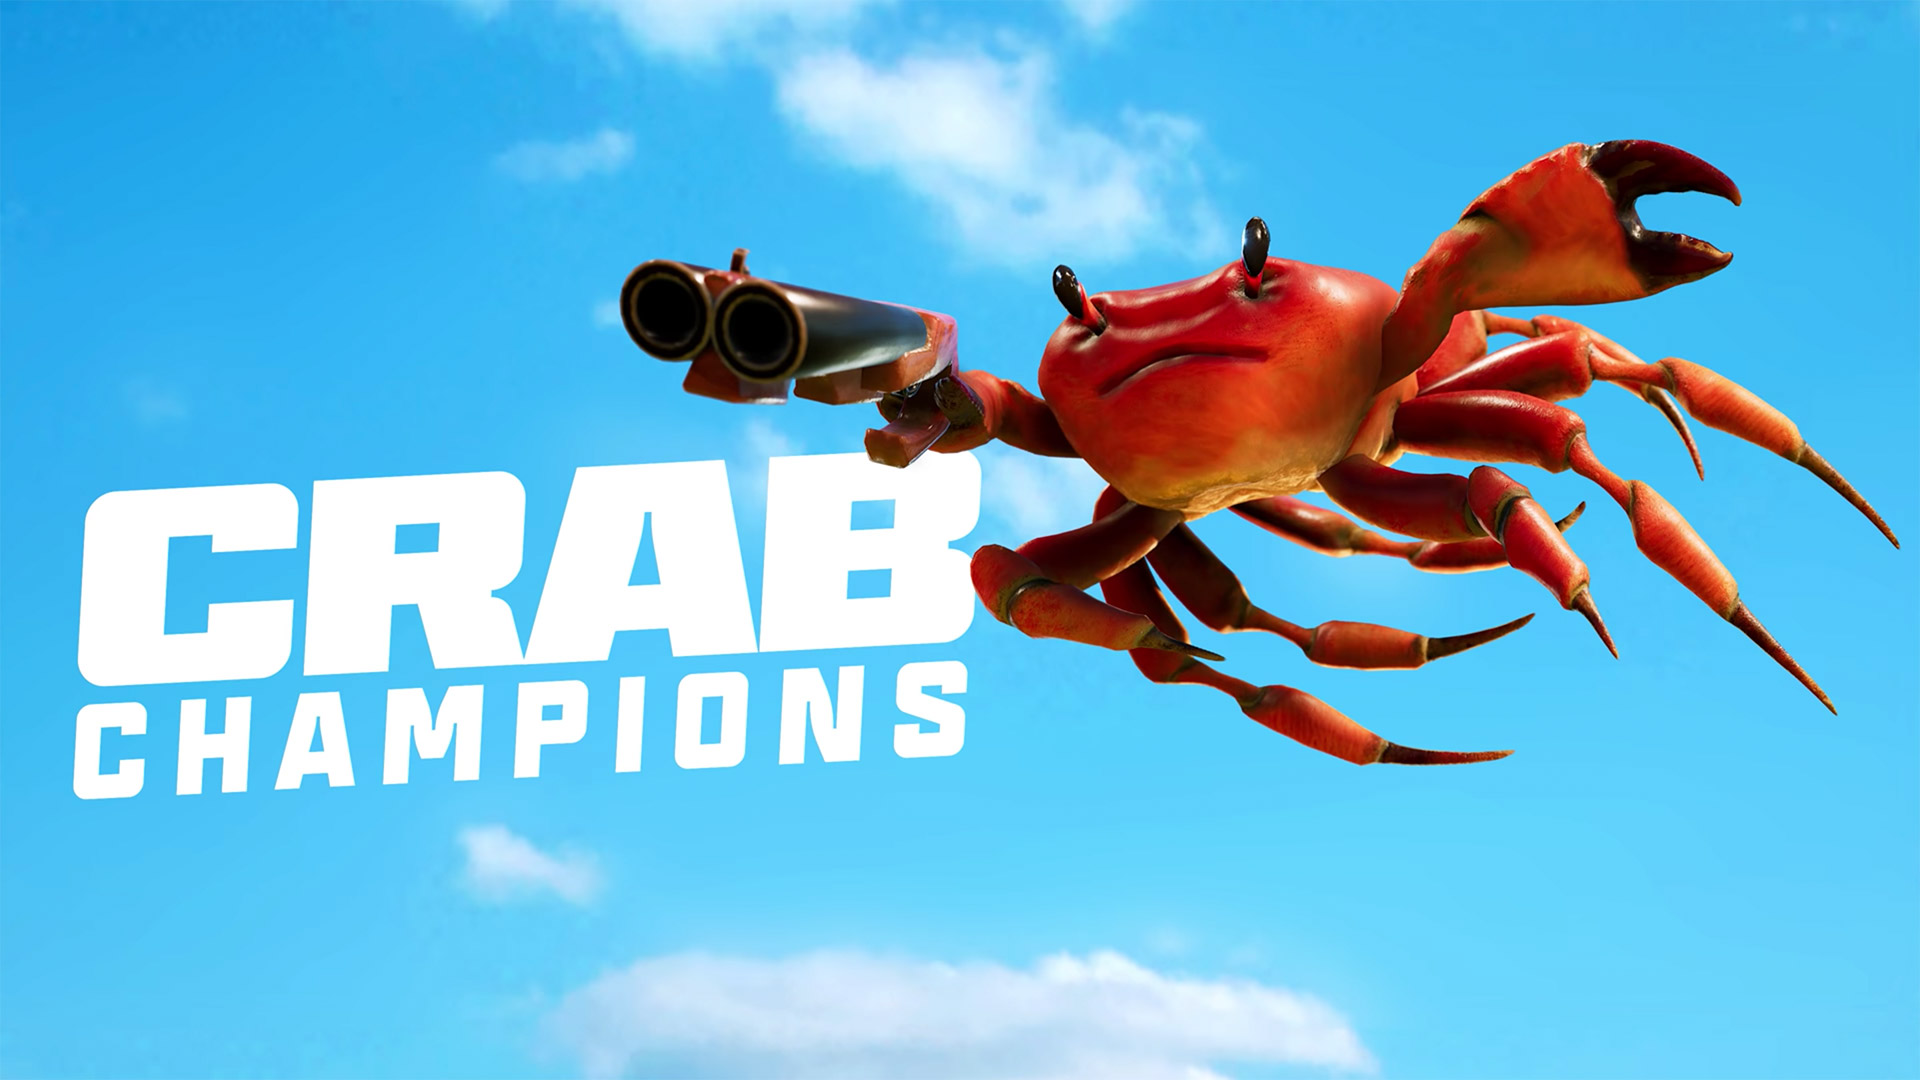 ก็บวกดิค้าบ! Crab Champions เกมปูโหดกระโดดยิงเดือด หายอดปูแห่งชายหาดริมทะเล